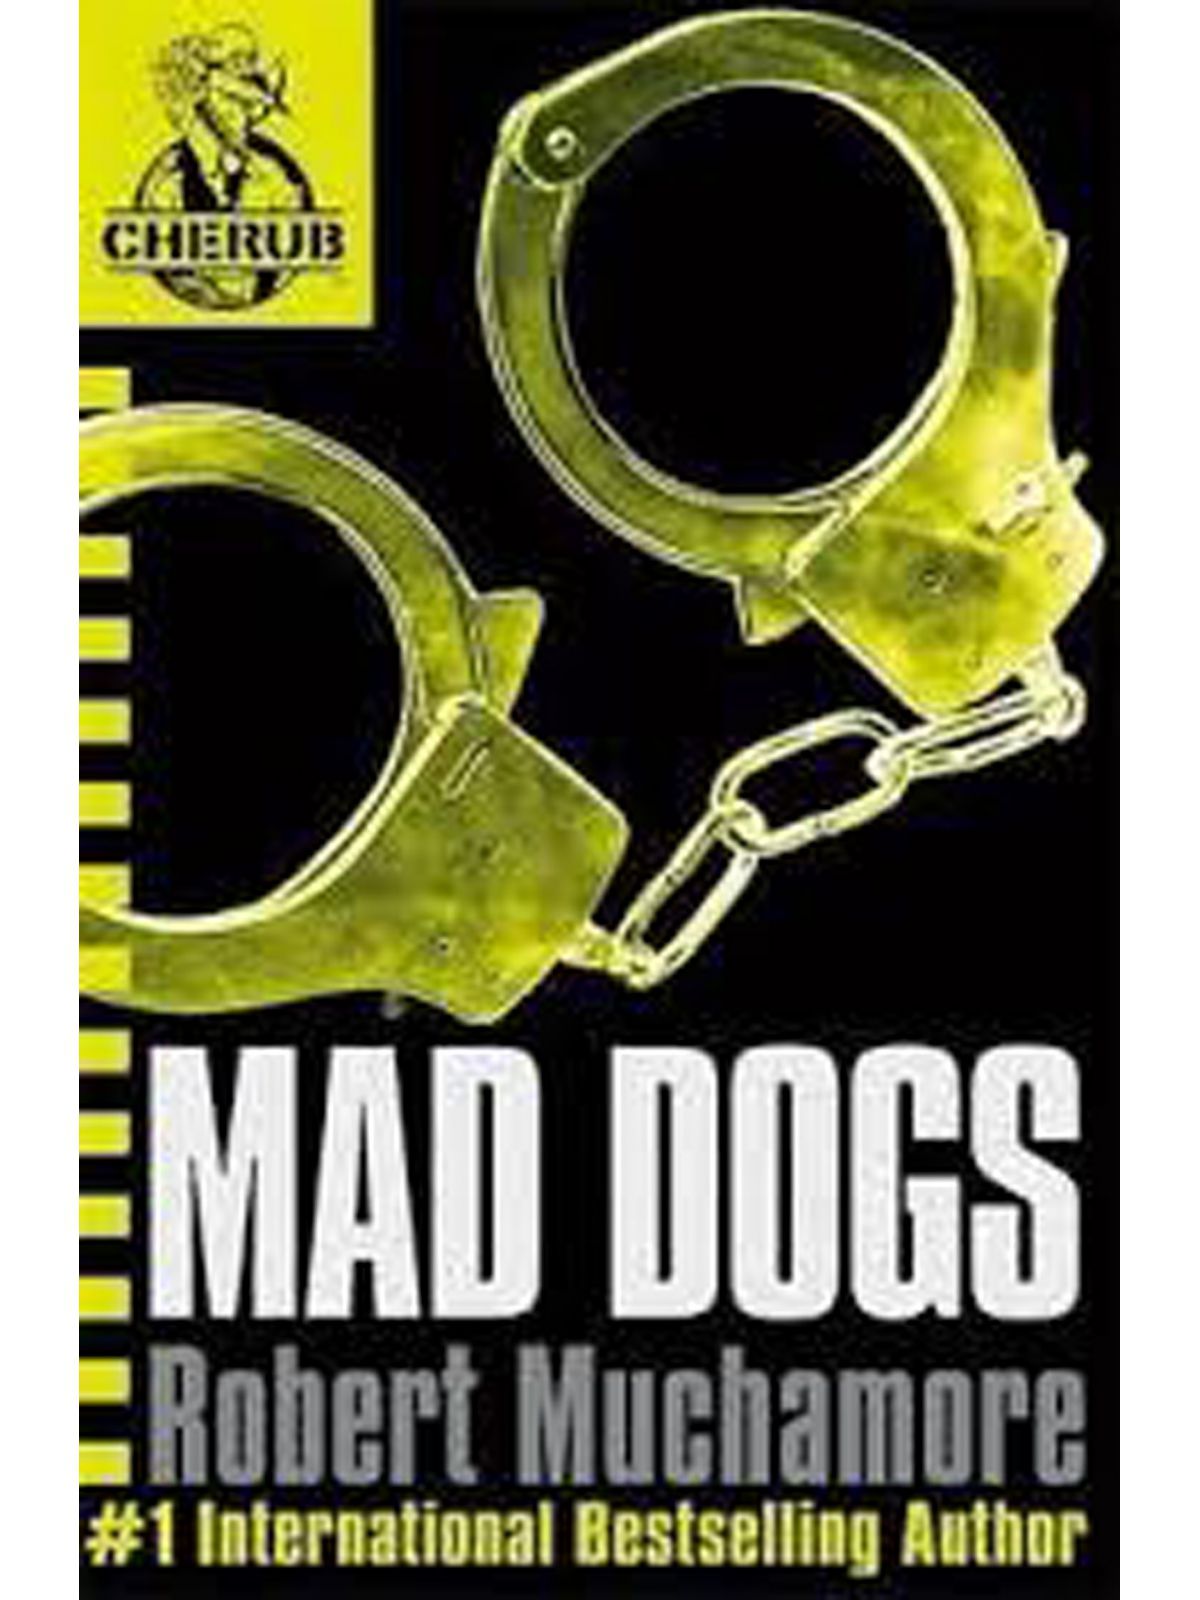 CHERUB / MAD DOGS MUCHAMORE , ROBERT Купить Книгу на Английском